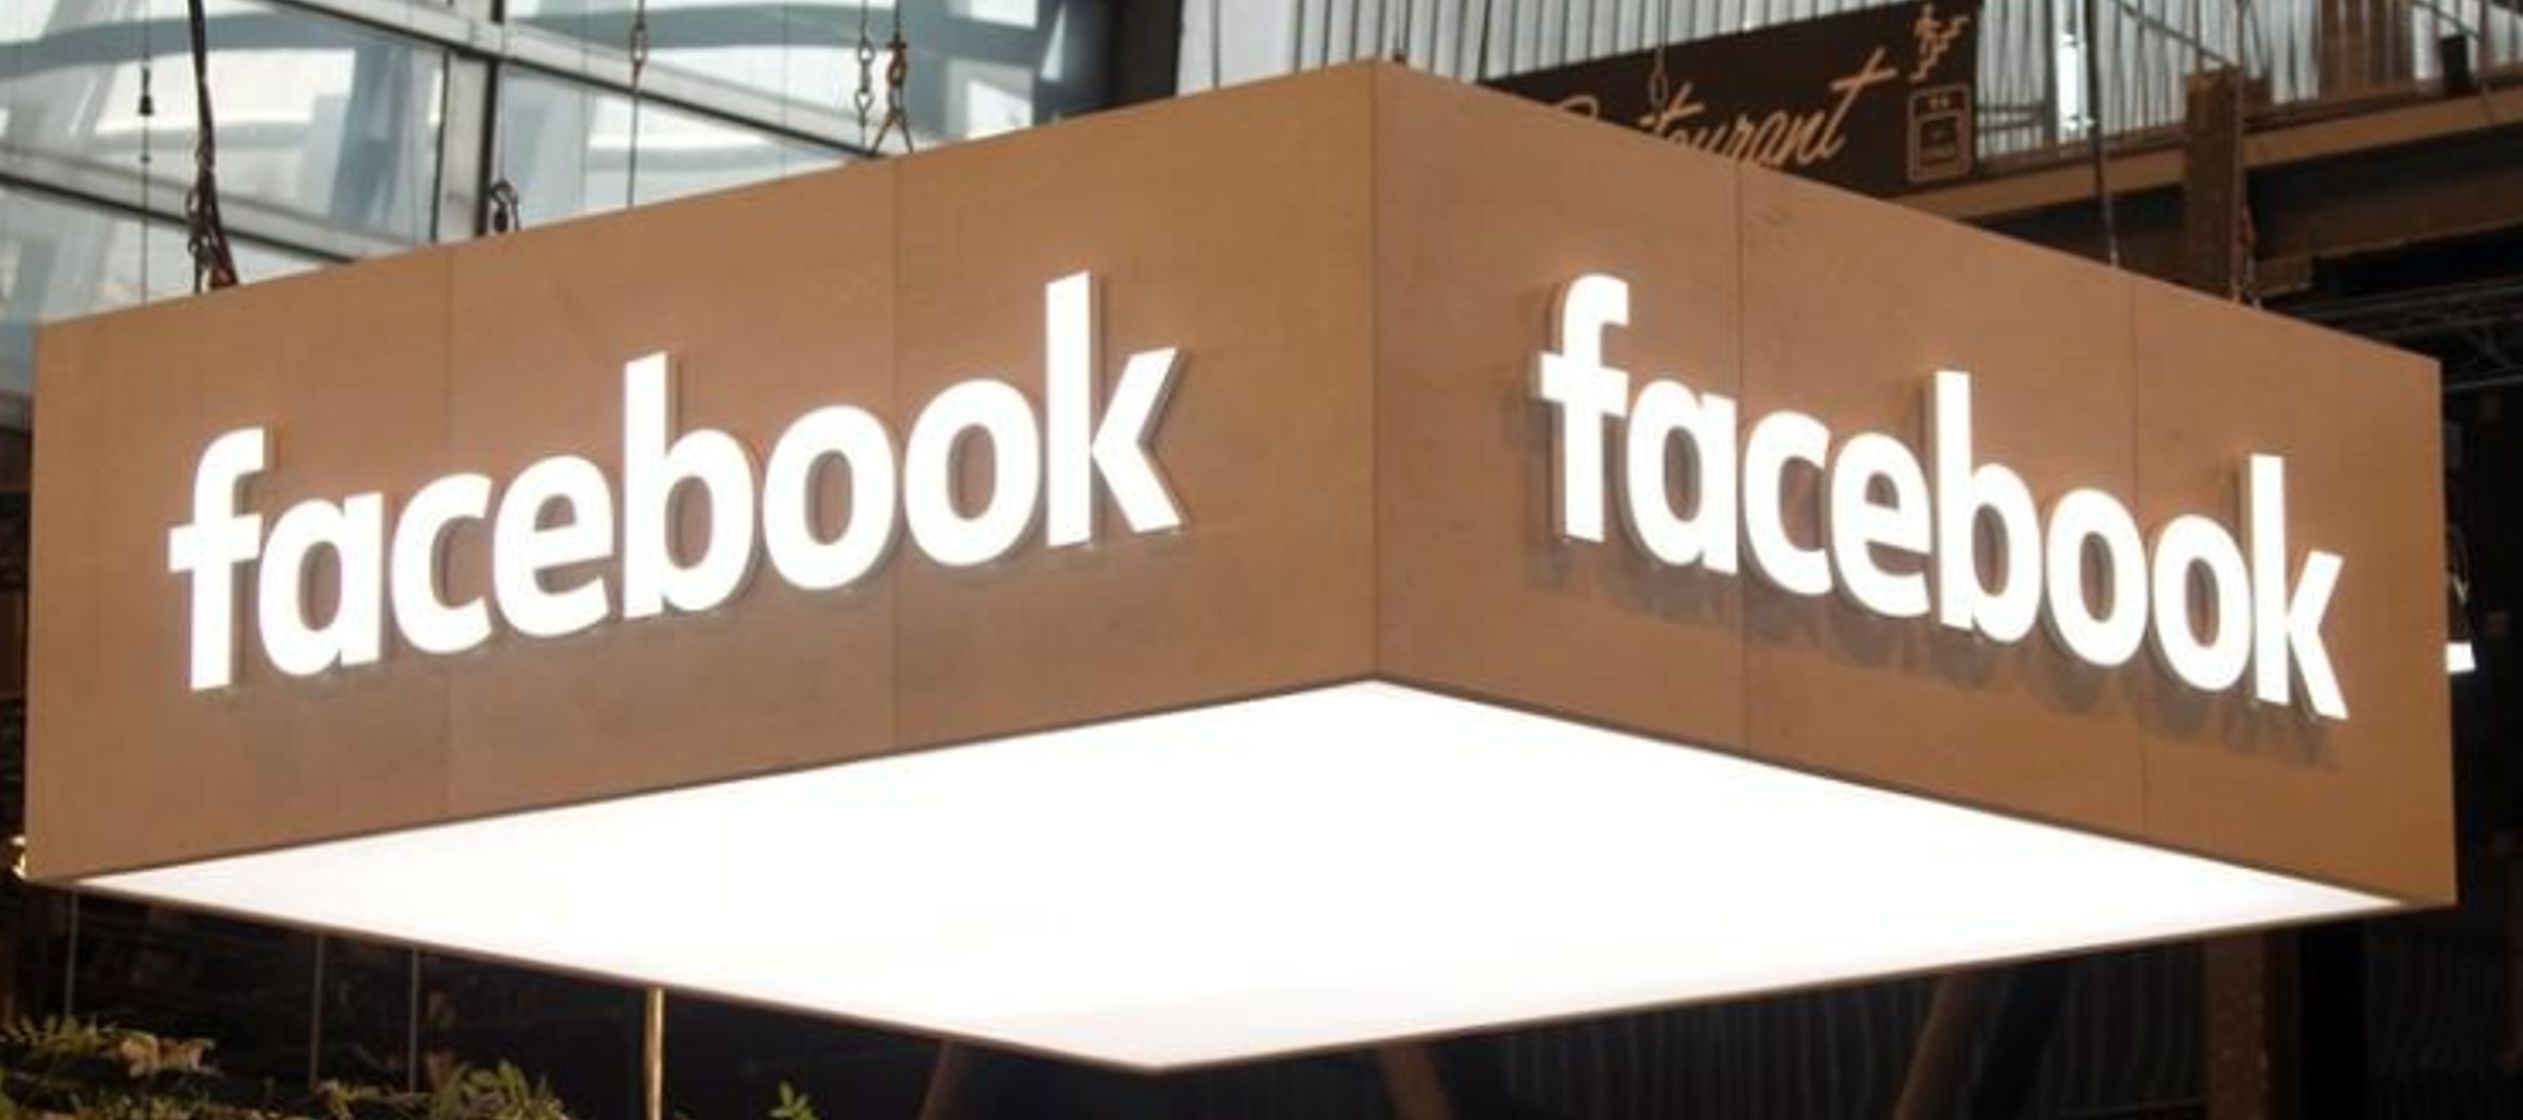 Facebook, la mayor red social en casi todos los grandes países, se ha convertido desde 2016...